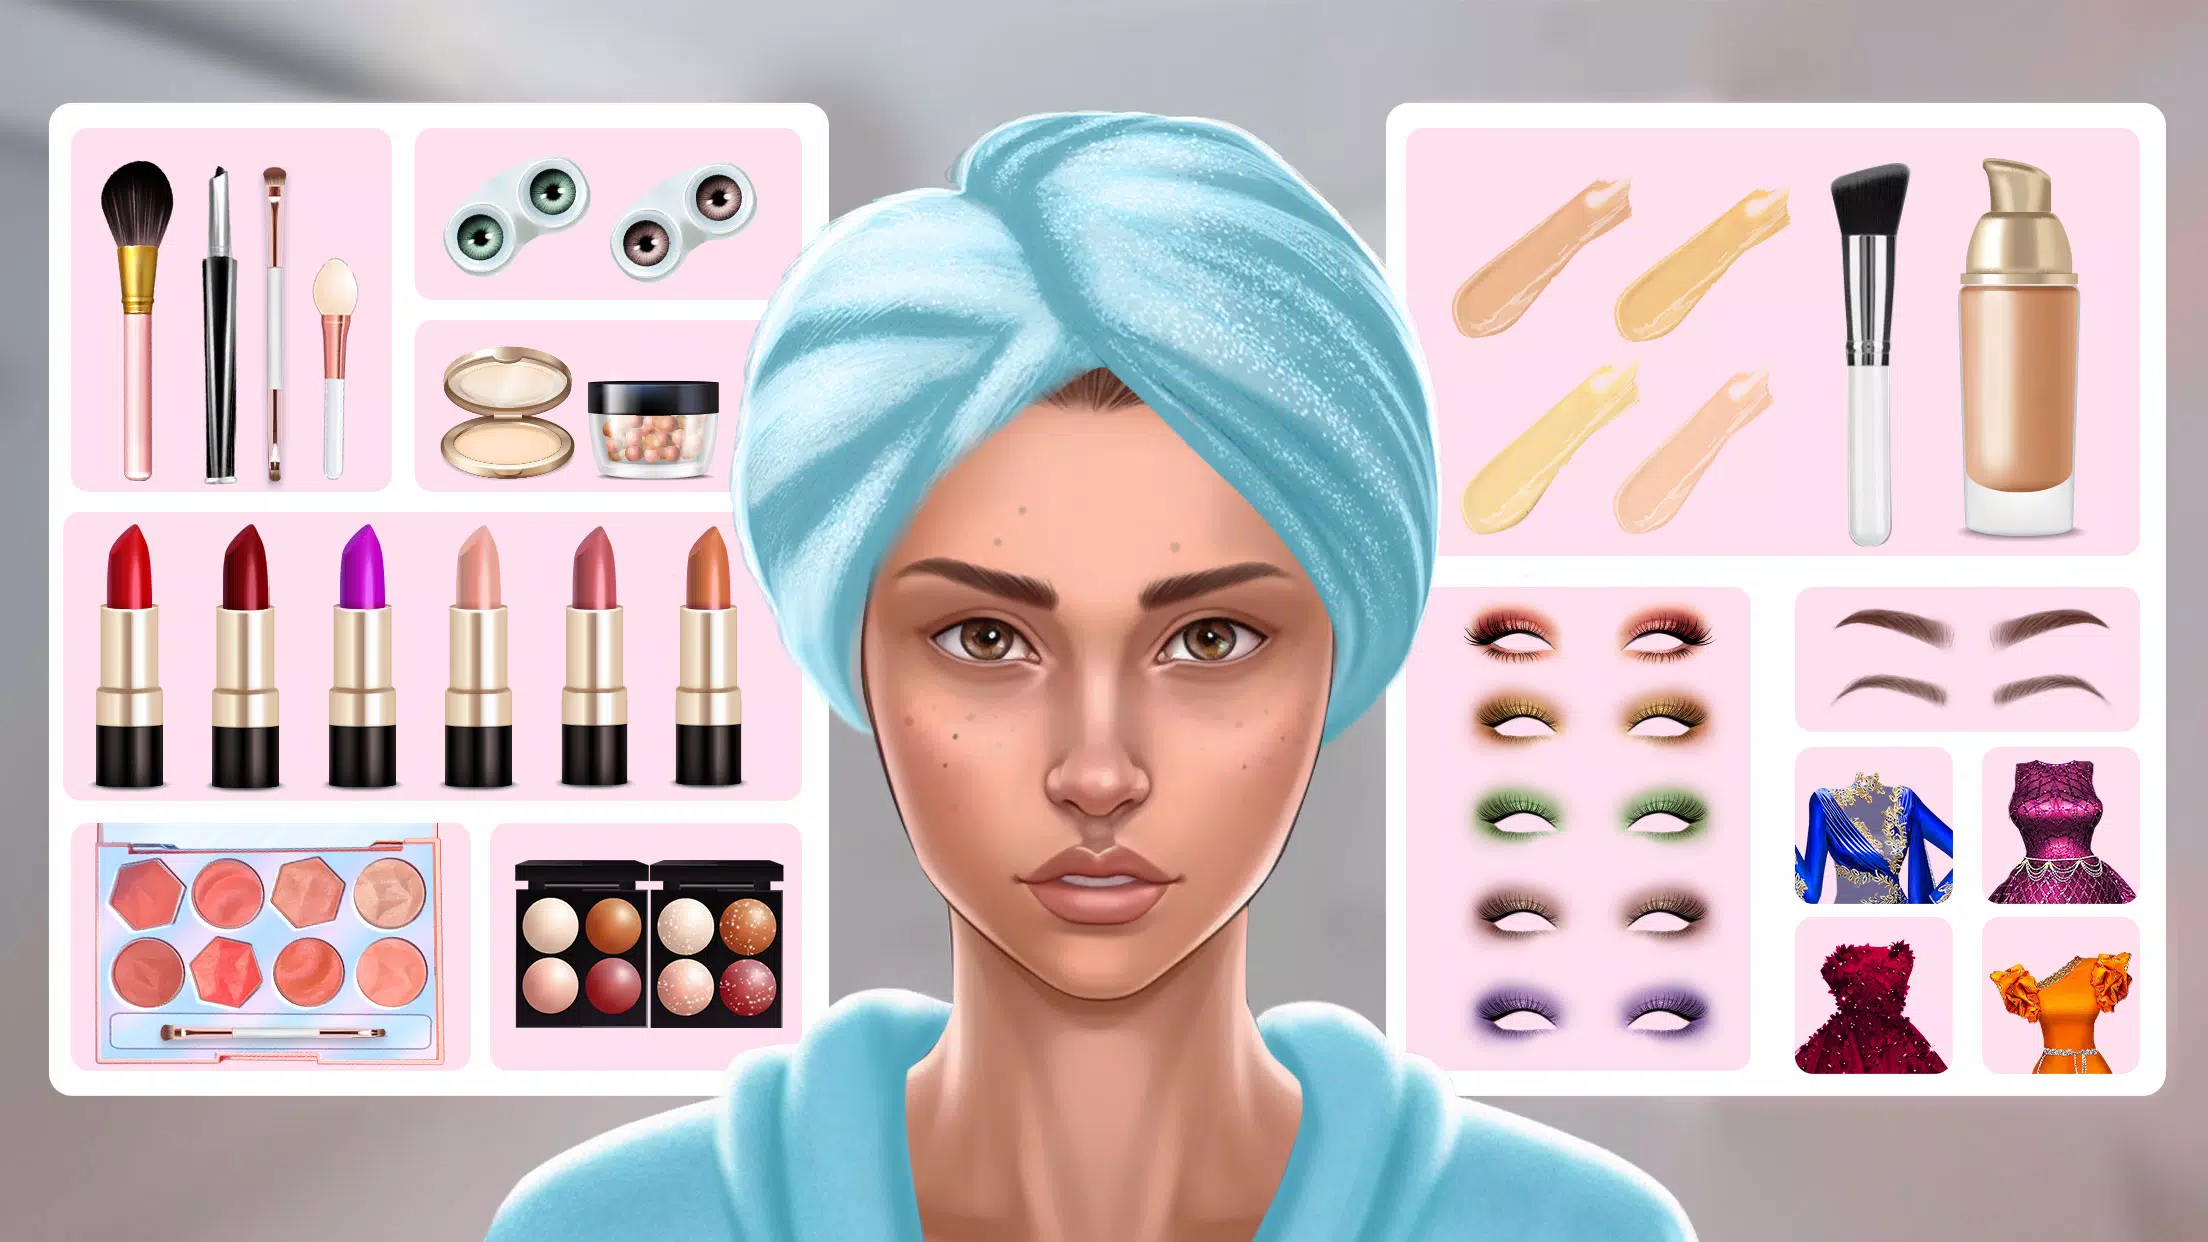 Makeup Salon:Jogo de maquiagem APK (Android Game) - Baixar Grátis